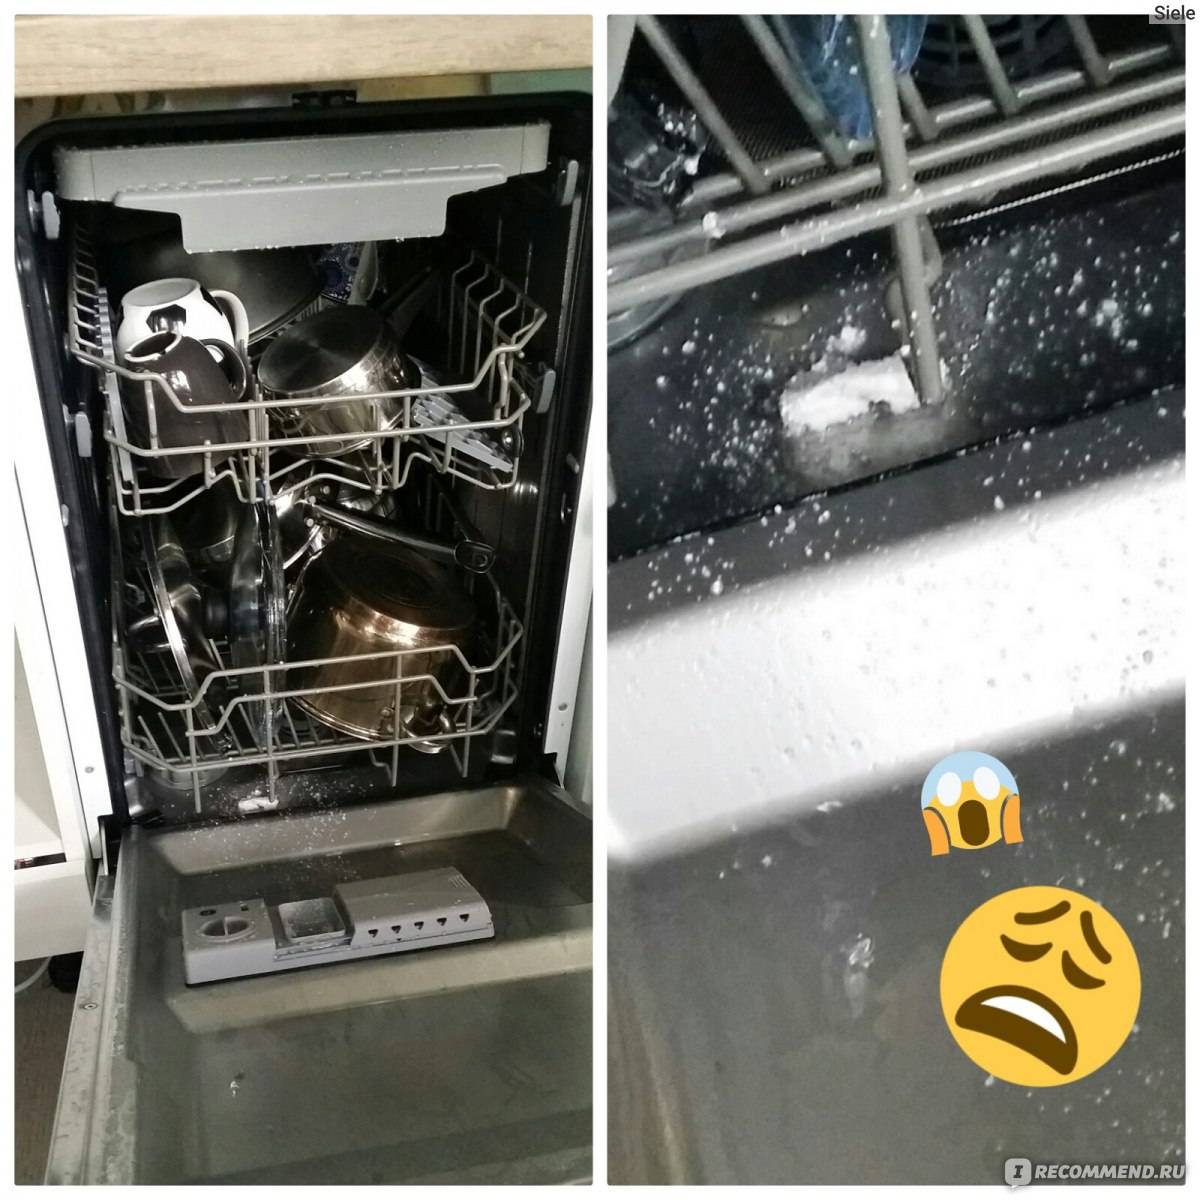 Первый пуск посудомоечной машины. Посудомоечная машина Ginzzu dc508. Взорвалась посудомоечная машина. Запуск посудомоечной машины. Взрыв посудомоечной машины.